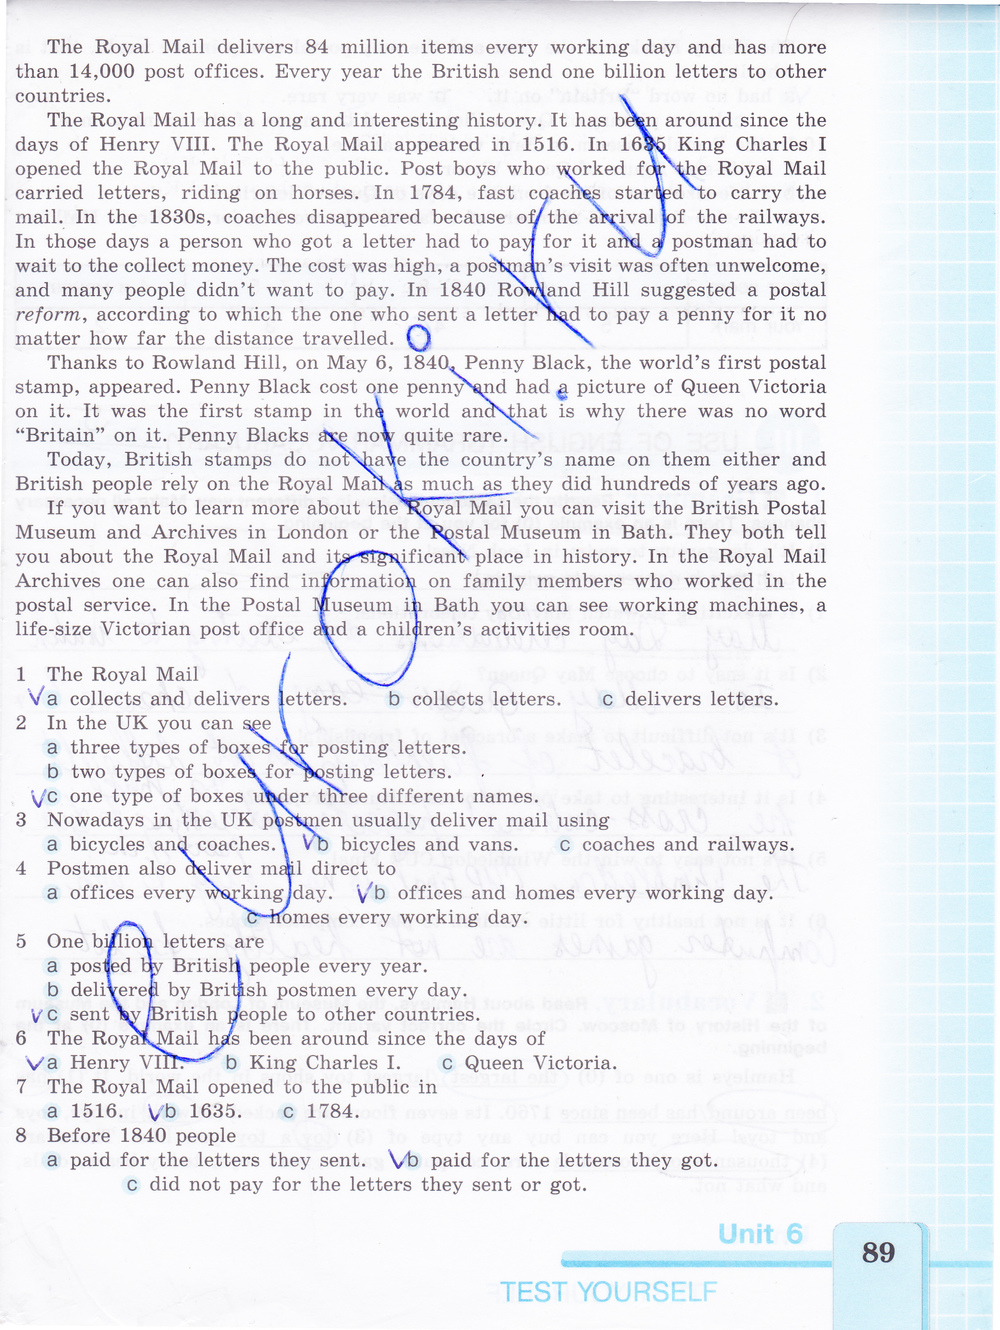 Рабочая тетрадь по английскому 7 класс (нумерация страниц не совпадает на 2 стр. со старым изданием) Кузовлев Страница 89